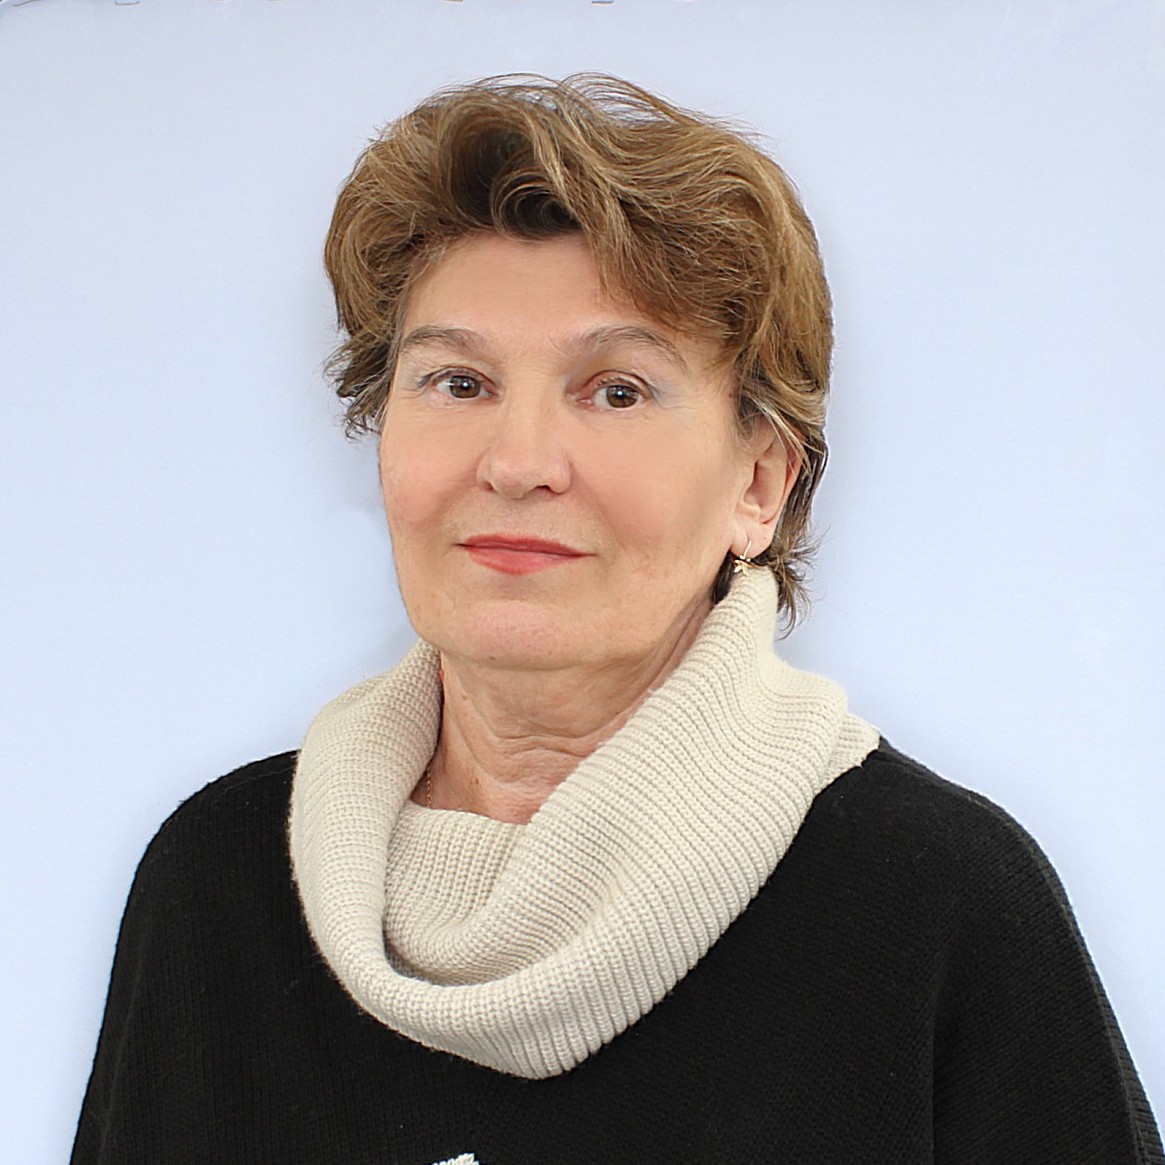 Maria Belyaeva